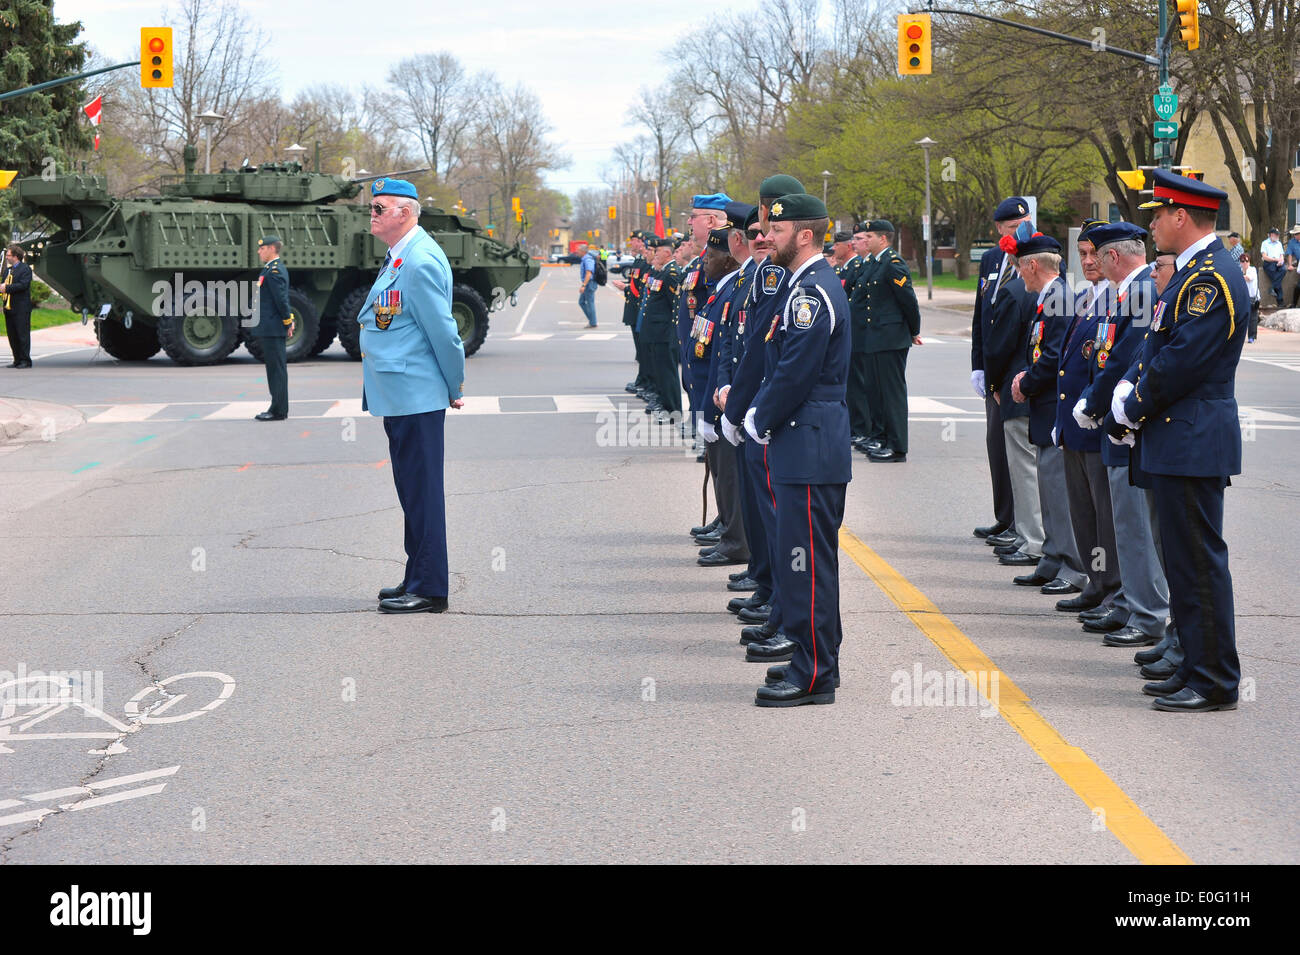 Bilder der kanadischen nationalen Tag der Ehre eine Veranstaltung zu die Kanadiern zu erinnern, wer in der Afghanistan-Konflikt starb. Stockfoto